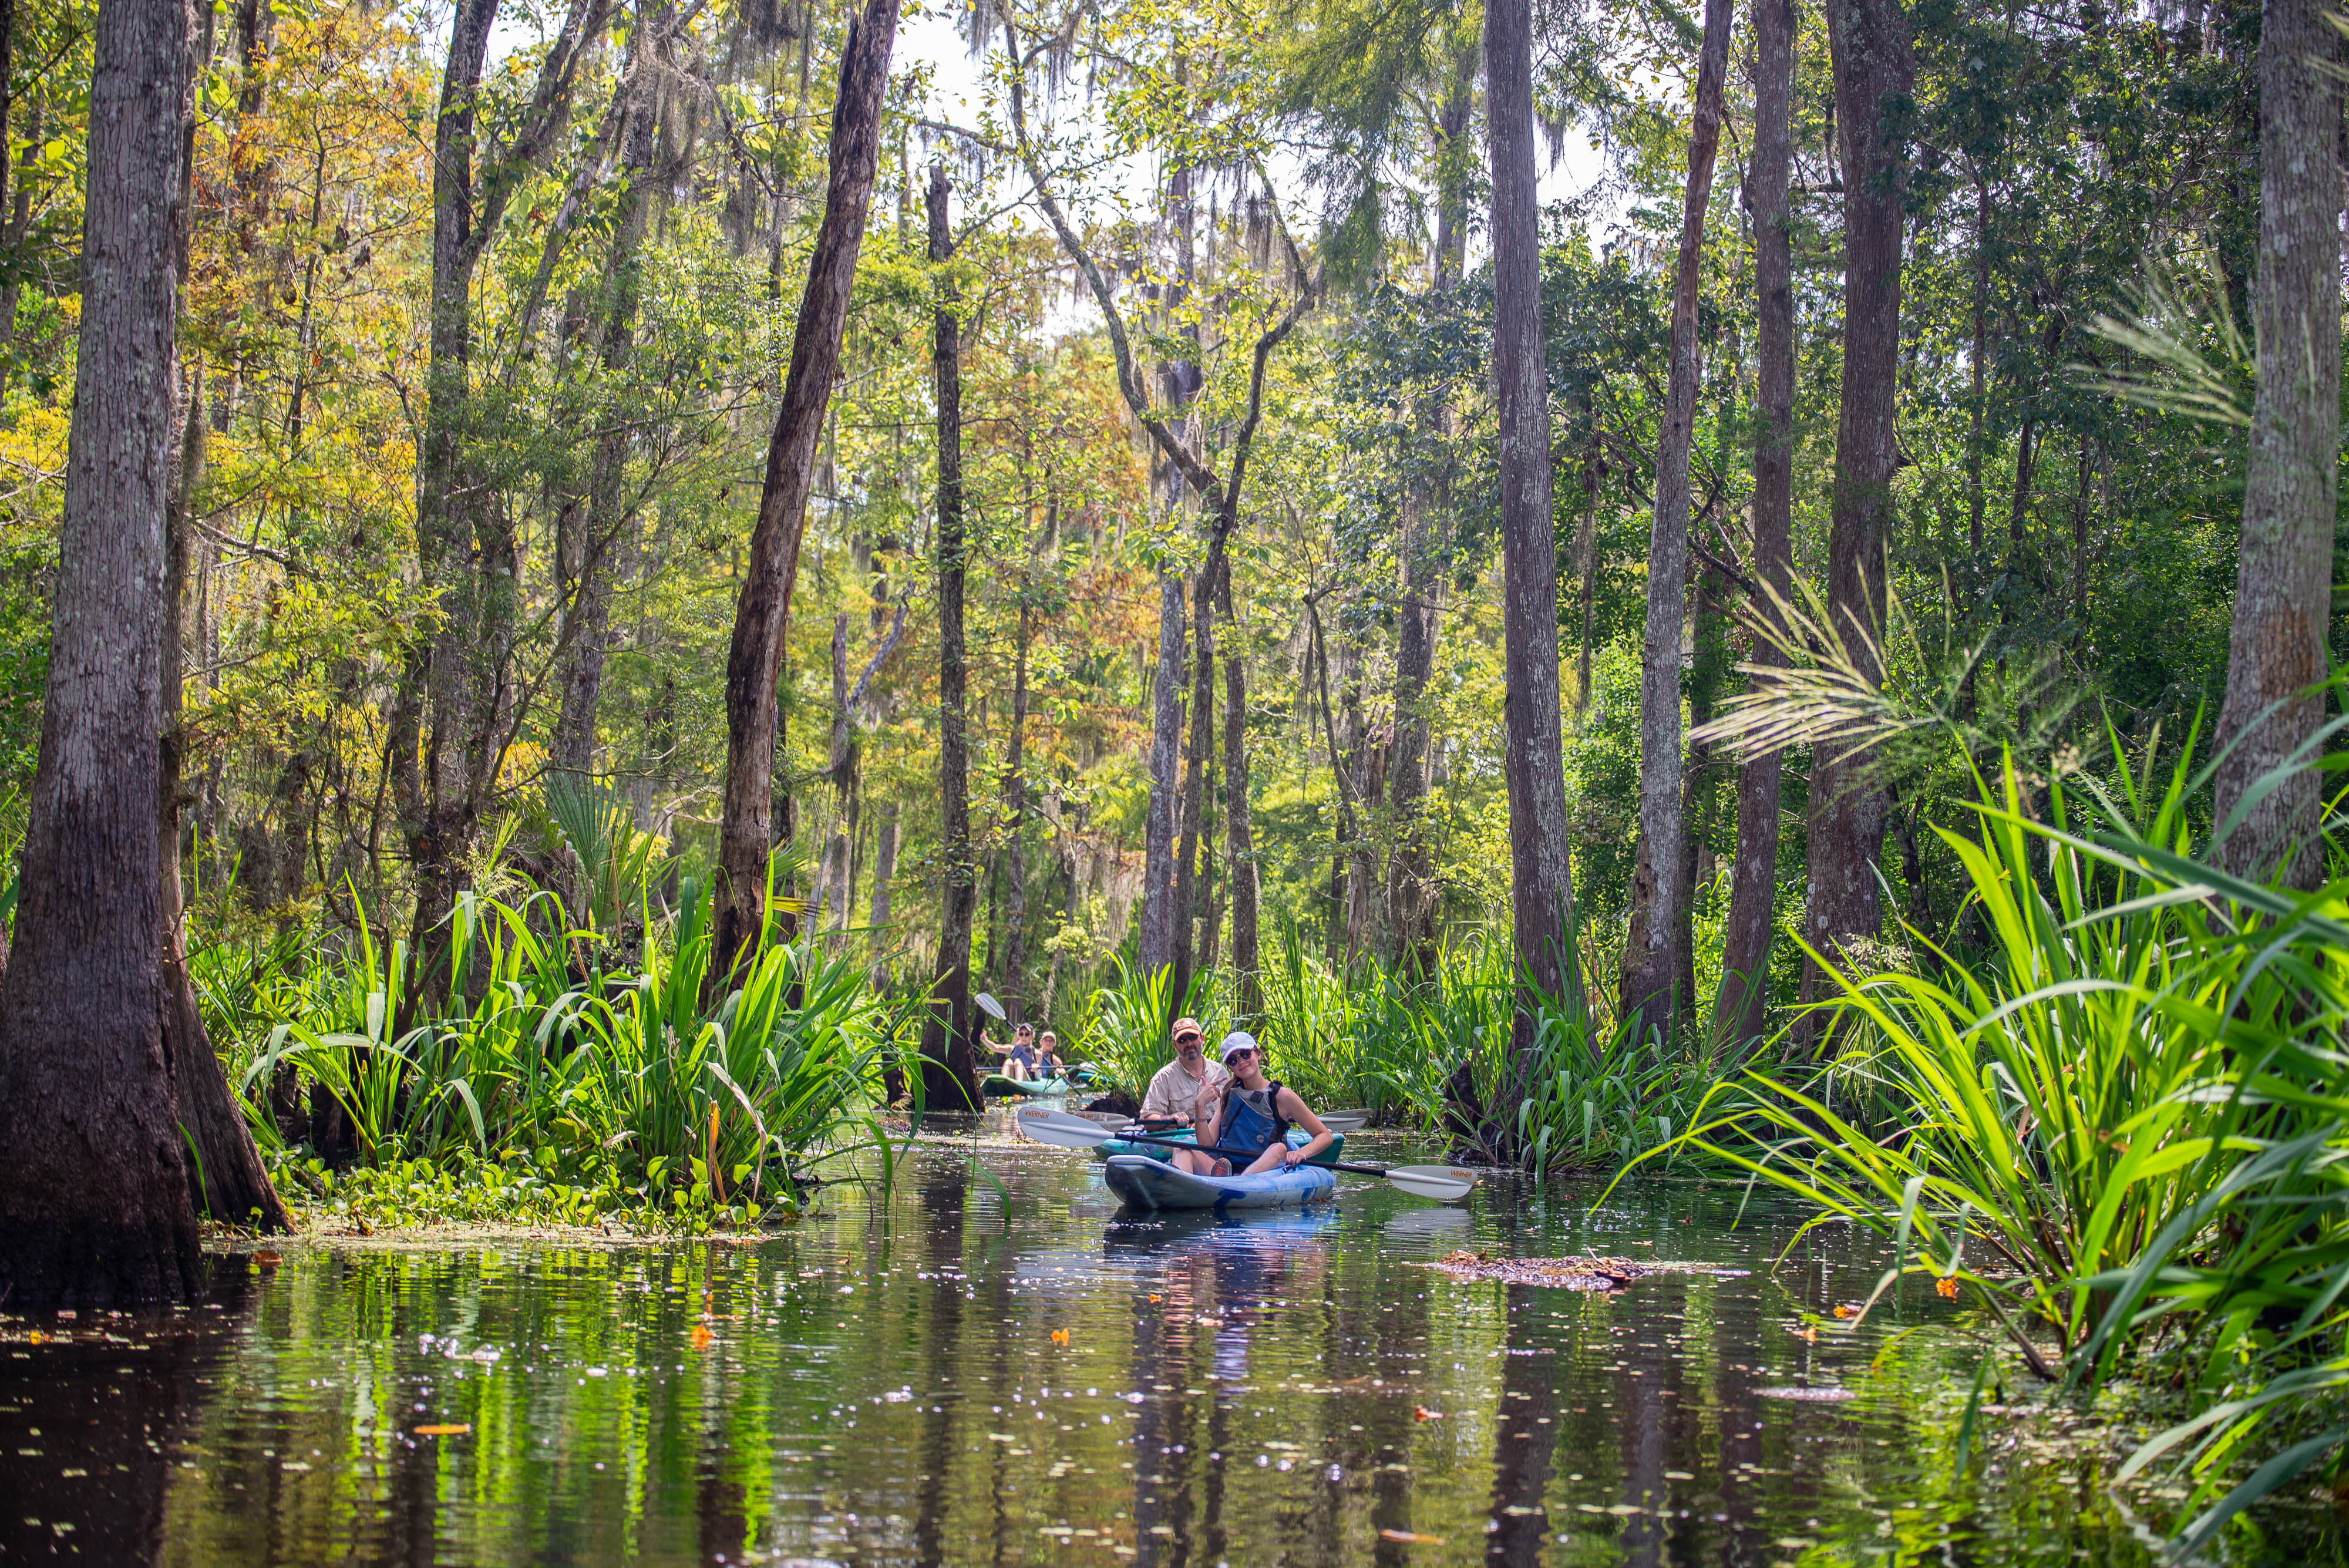 Kayaking in Manchac, kayaking swamp tour, new orleans kayak tour